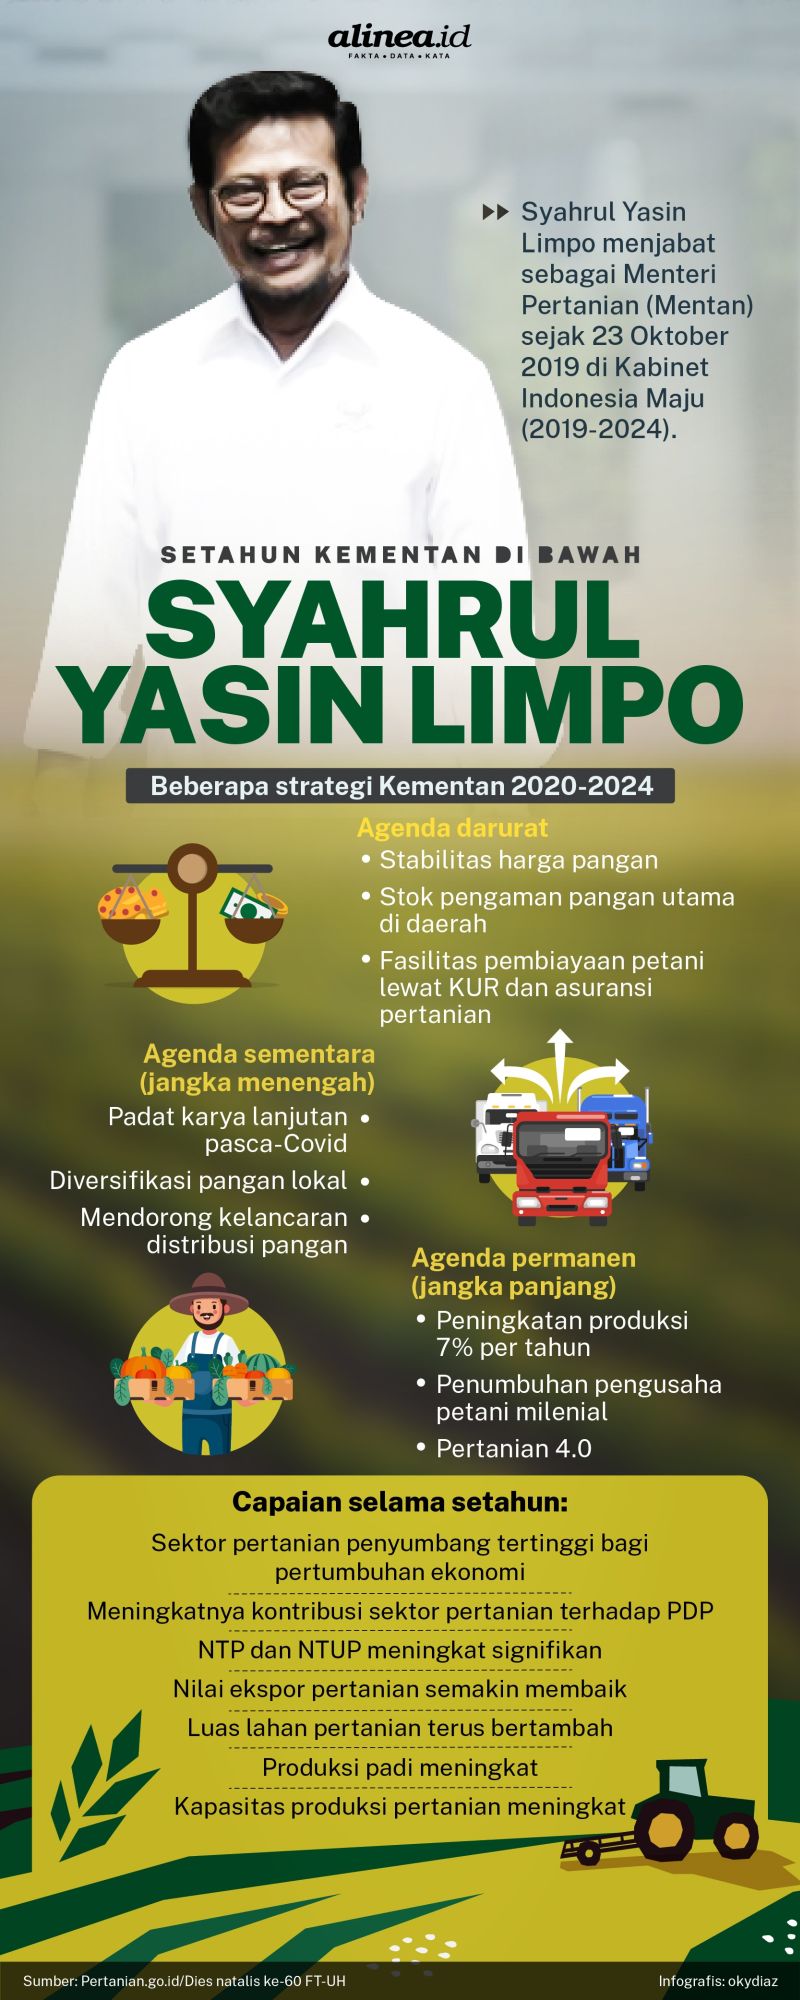 Infografik Kementan di bawah Syahrul Yasin Limpo./Alinea.id/Oky Diaz.